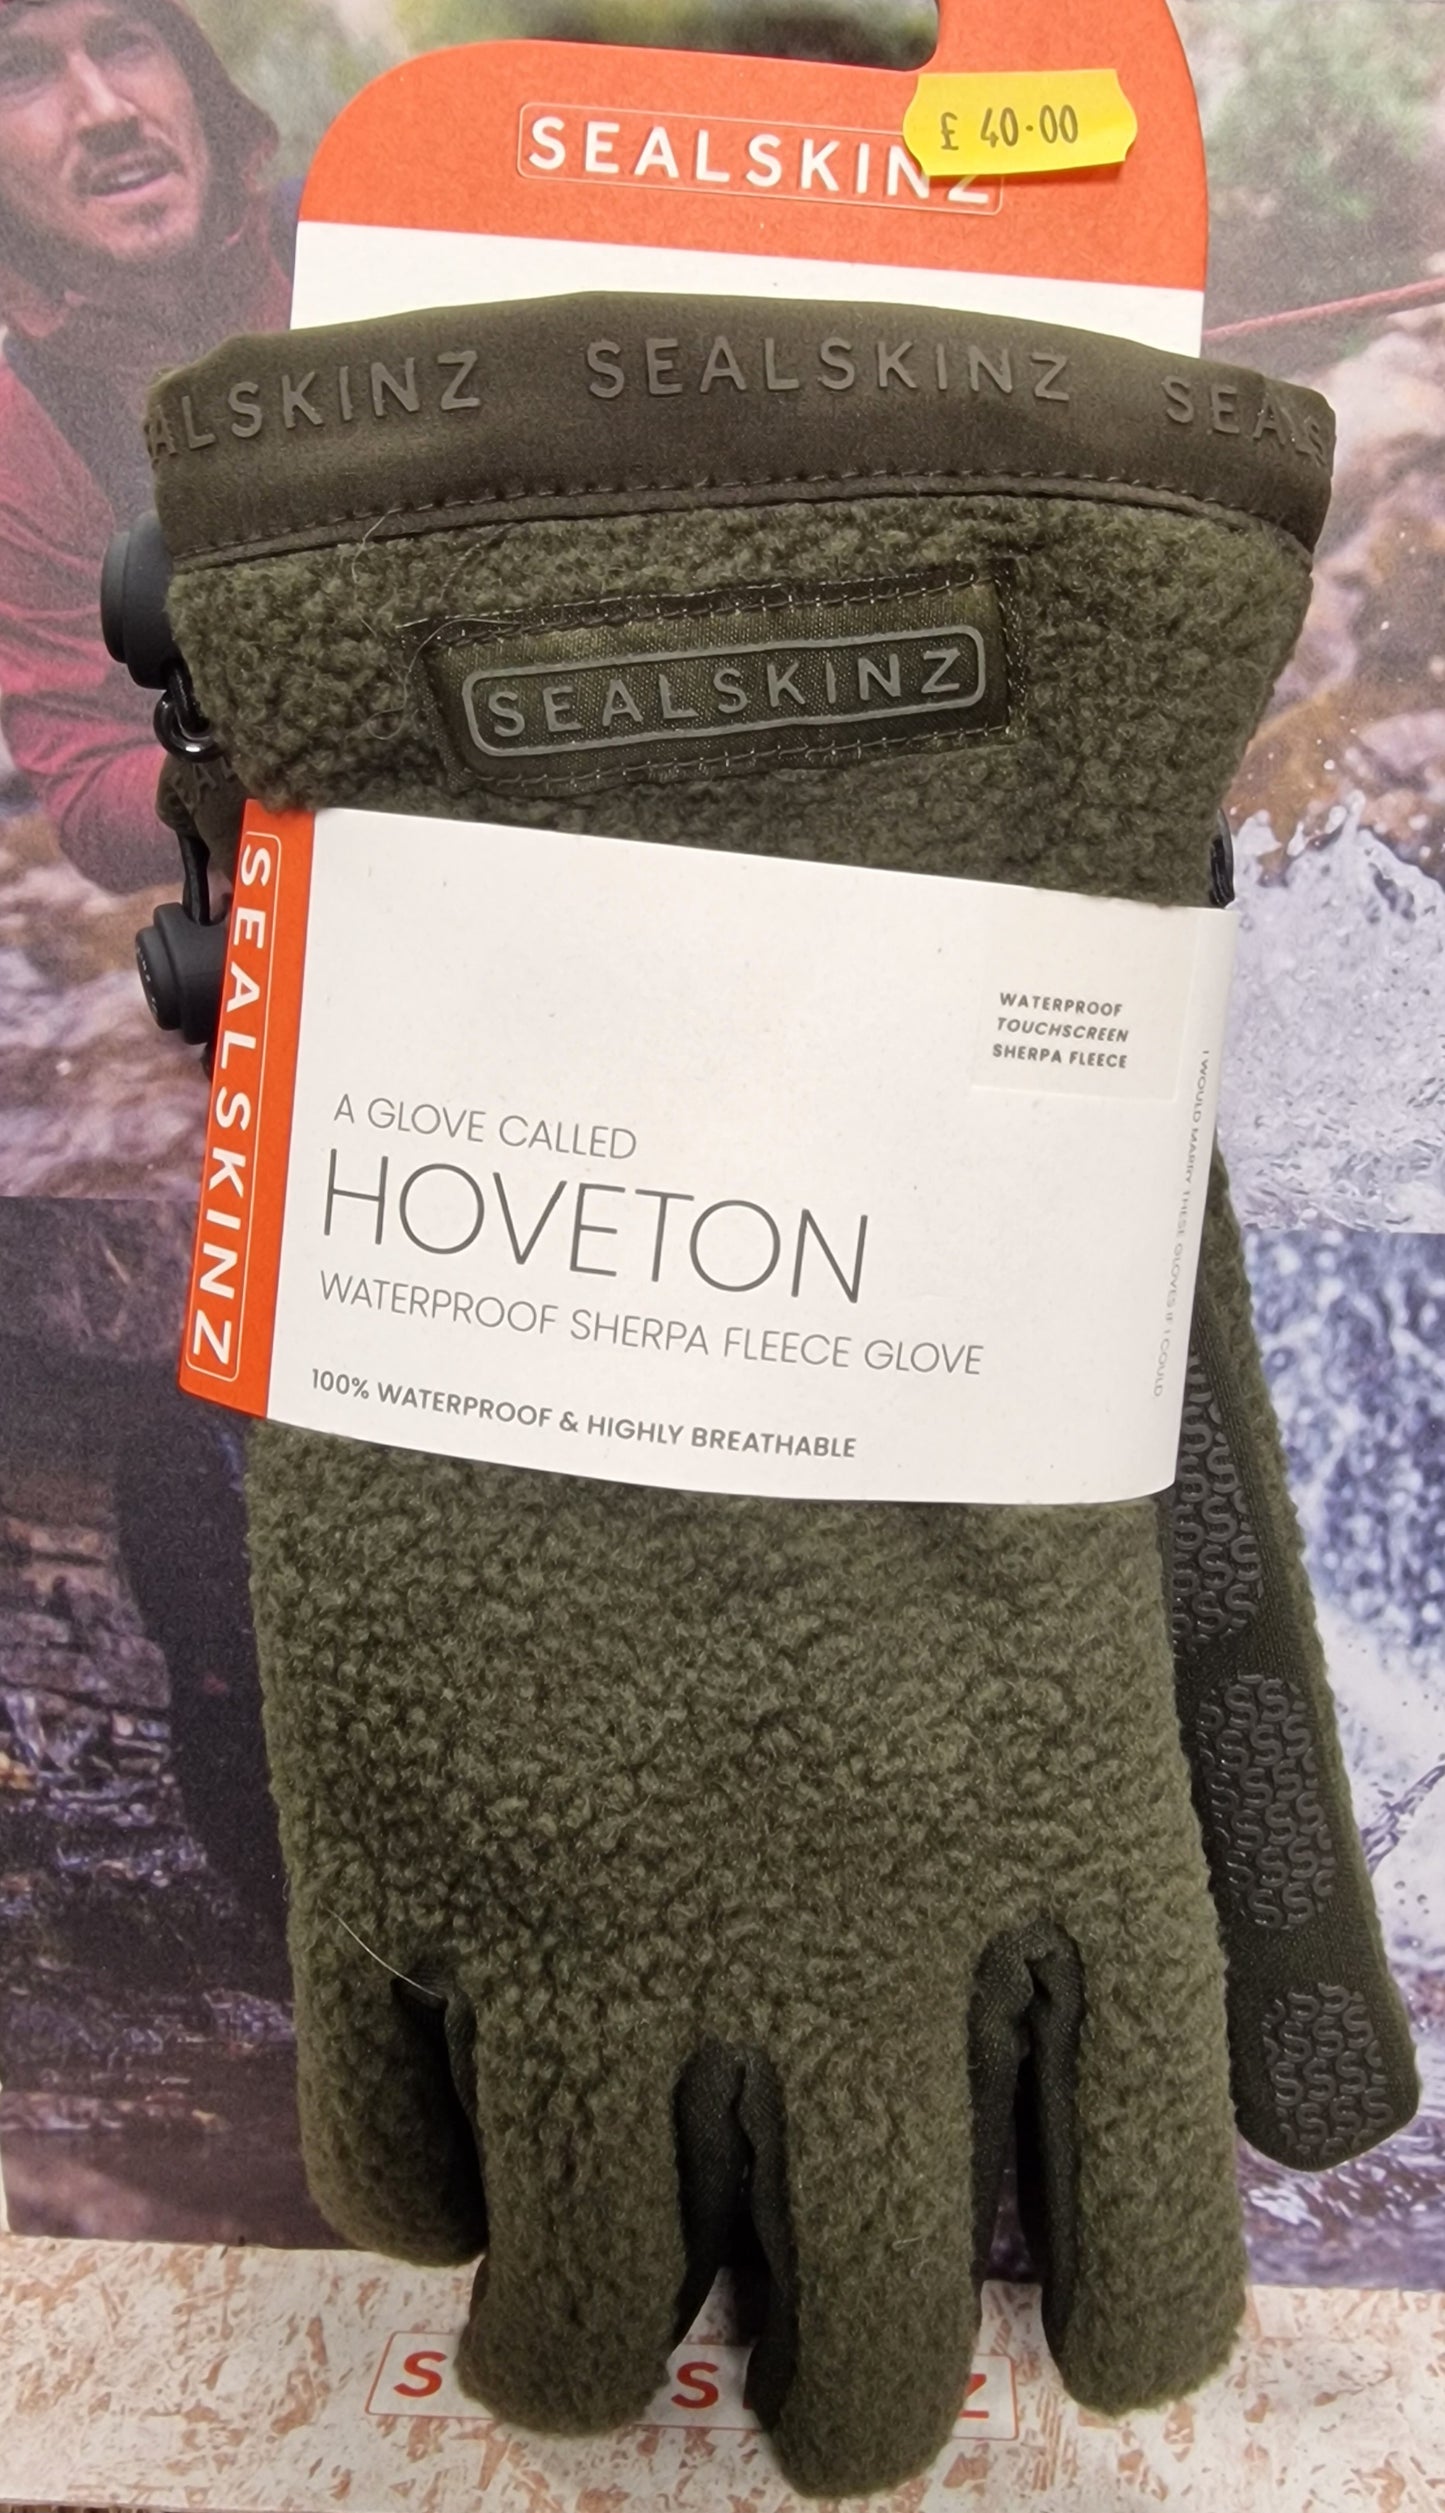 Sealskinz Hoveton sherpa fleece waterproof gloves